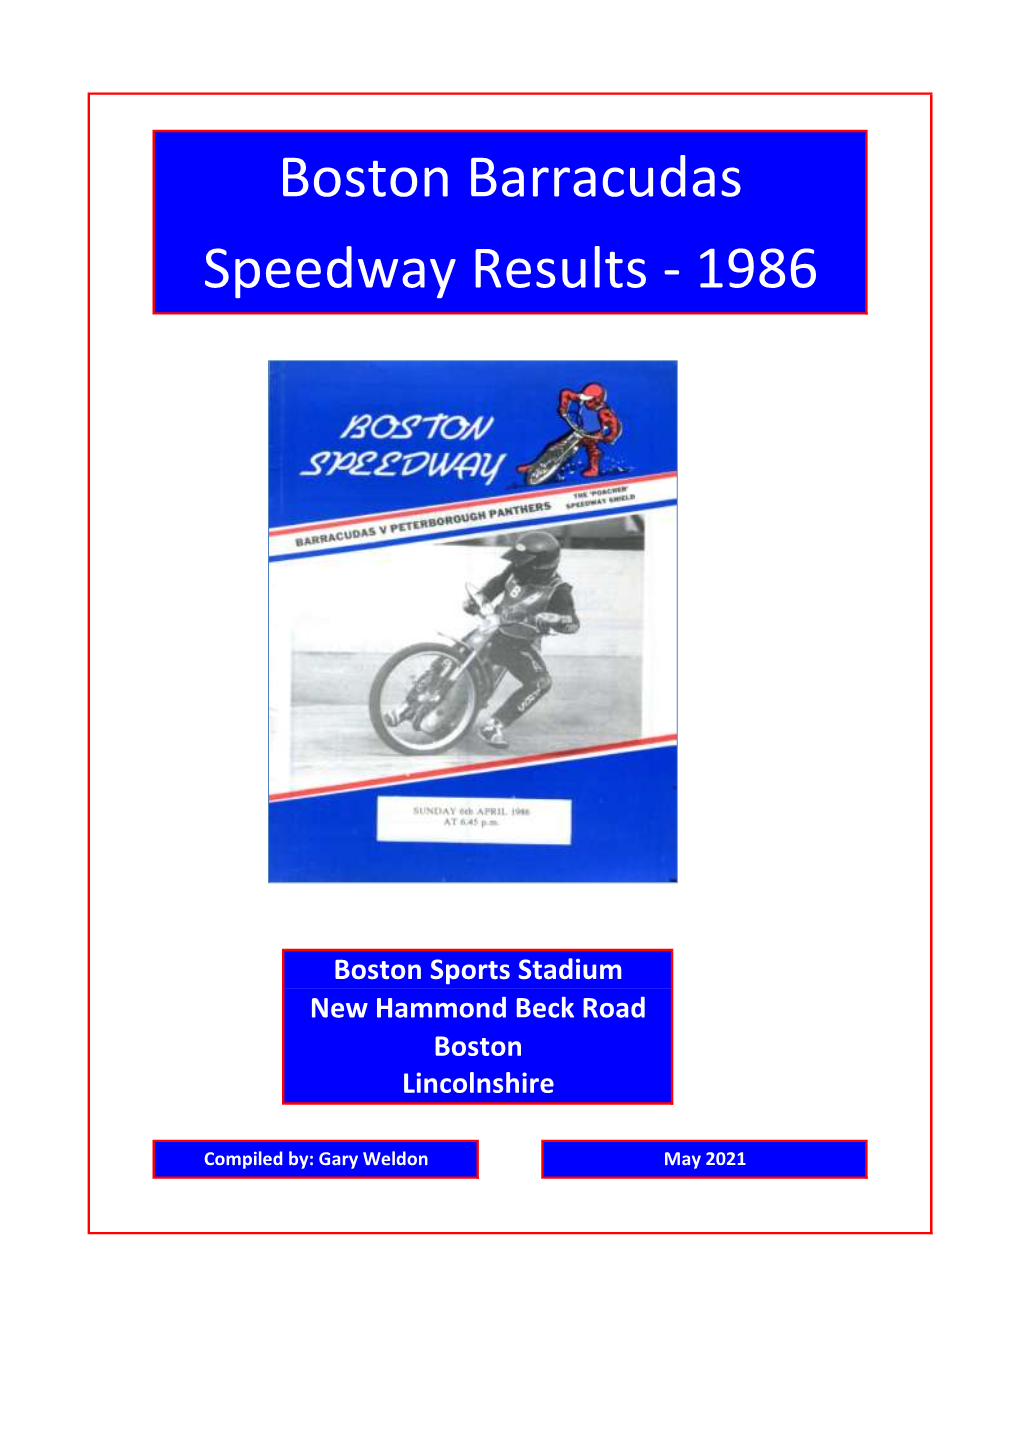 Boston Barracudas Speedway Results - 1986